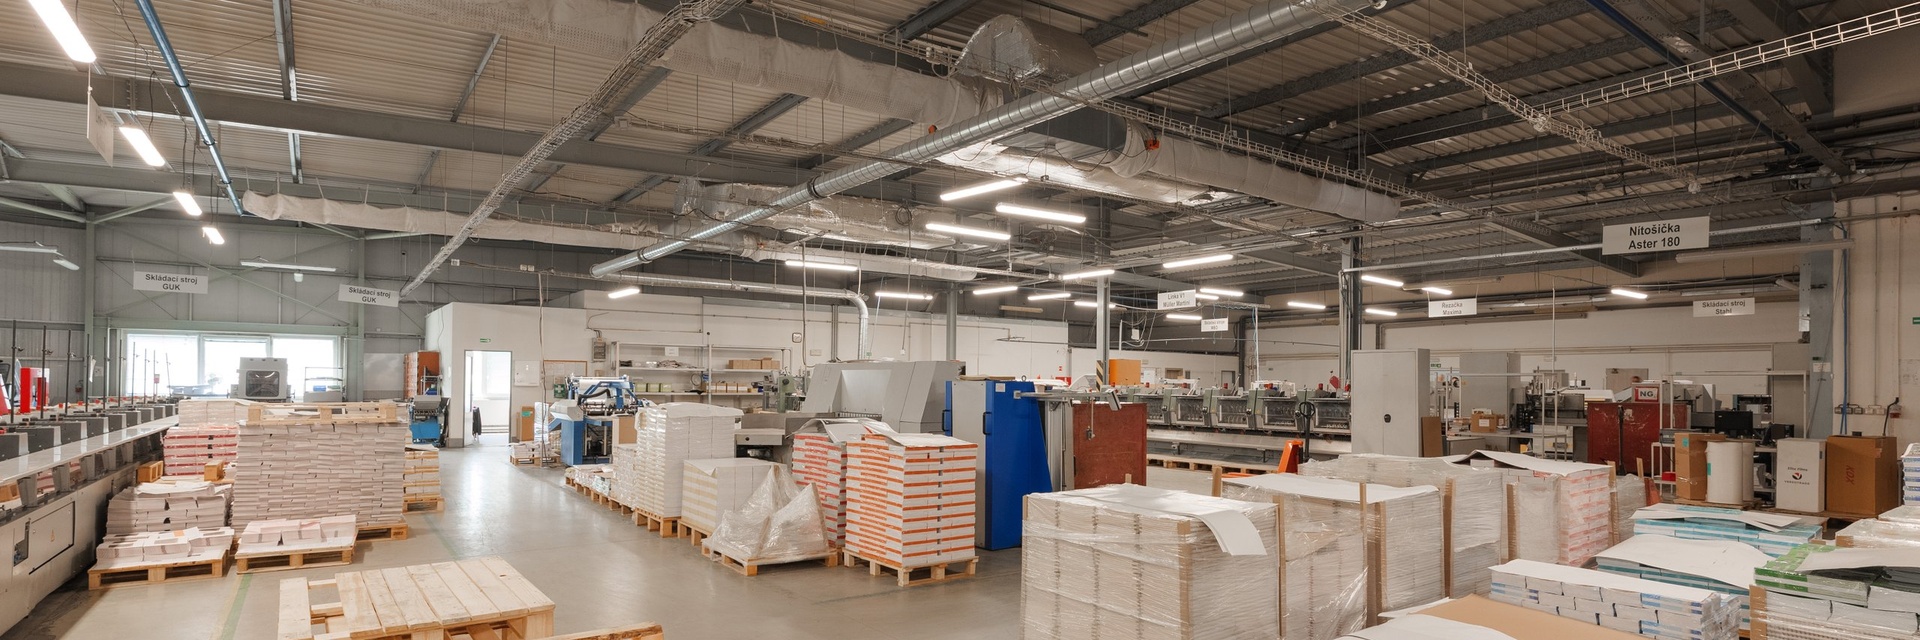 Prodej výrobní haly, cca 2700 m² užitné plochy v Blansku,  dojezdová vzdálenost 30 min od Brna